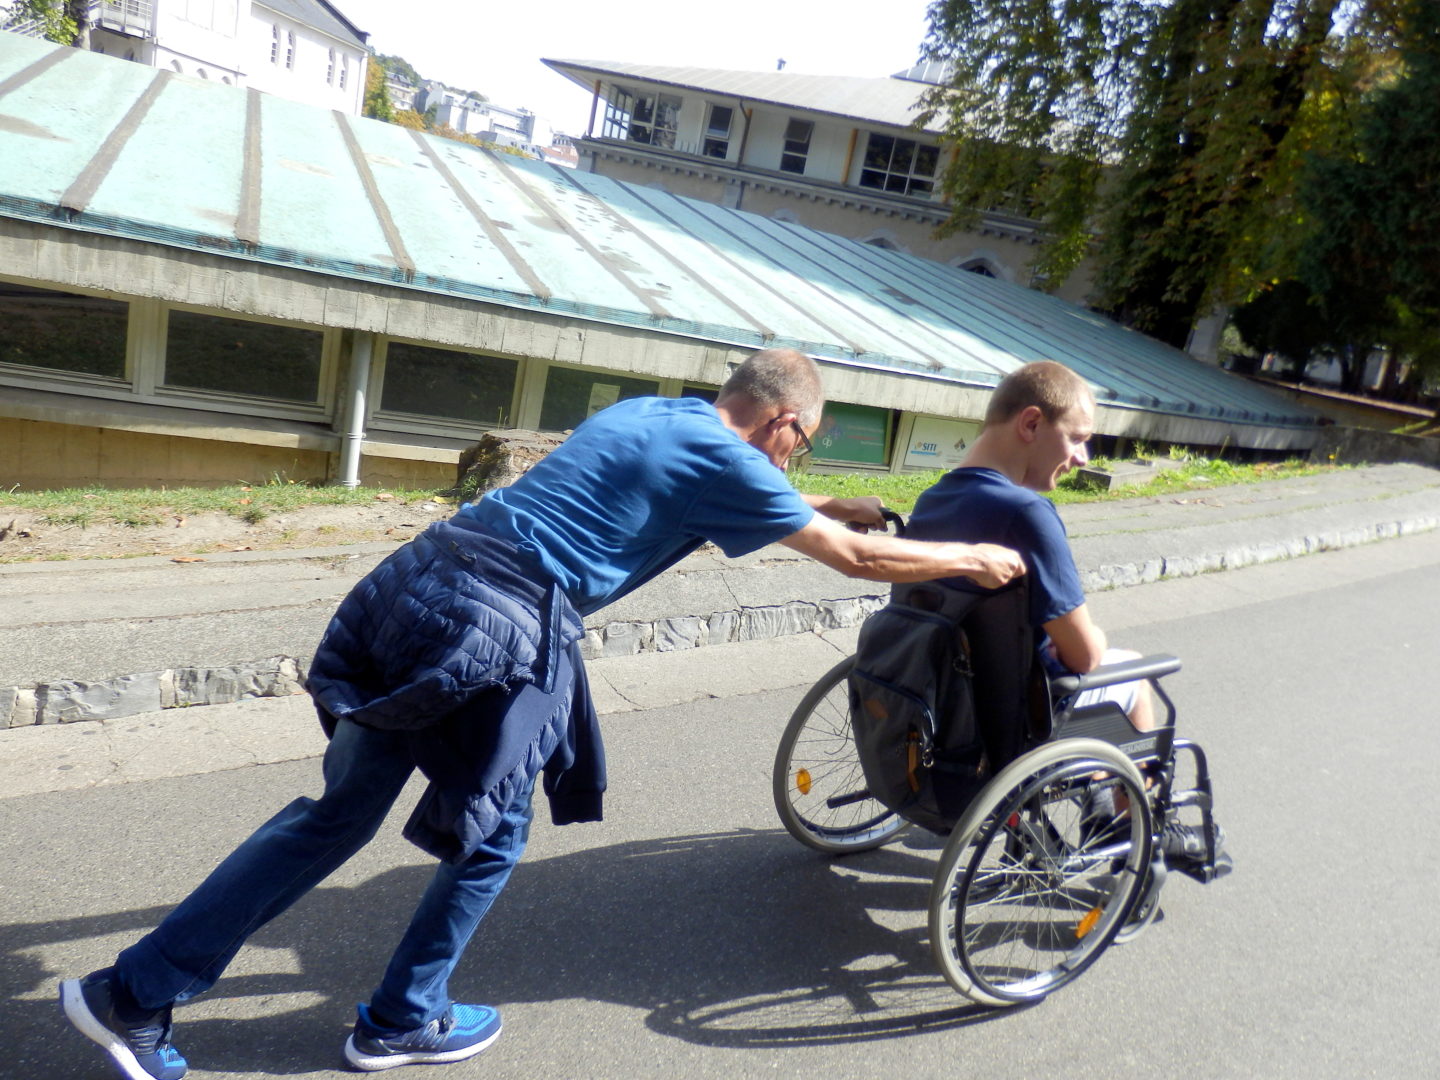 Na zdjęciu mężczyzna pchający wózek inwalidzki w drugim mężczyzną. Pcha wózek pod górę, widać po nim wysiłek fizyczny. W tle rozległy, płaski dach oraz budynek.